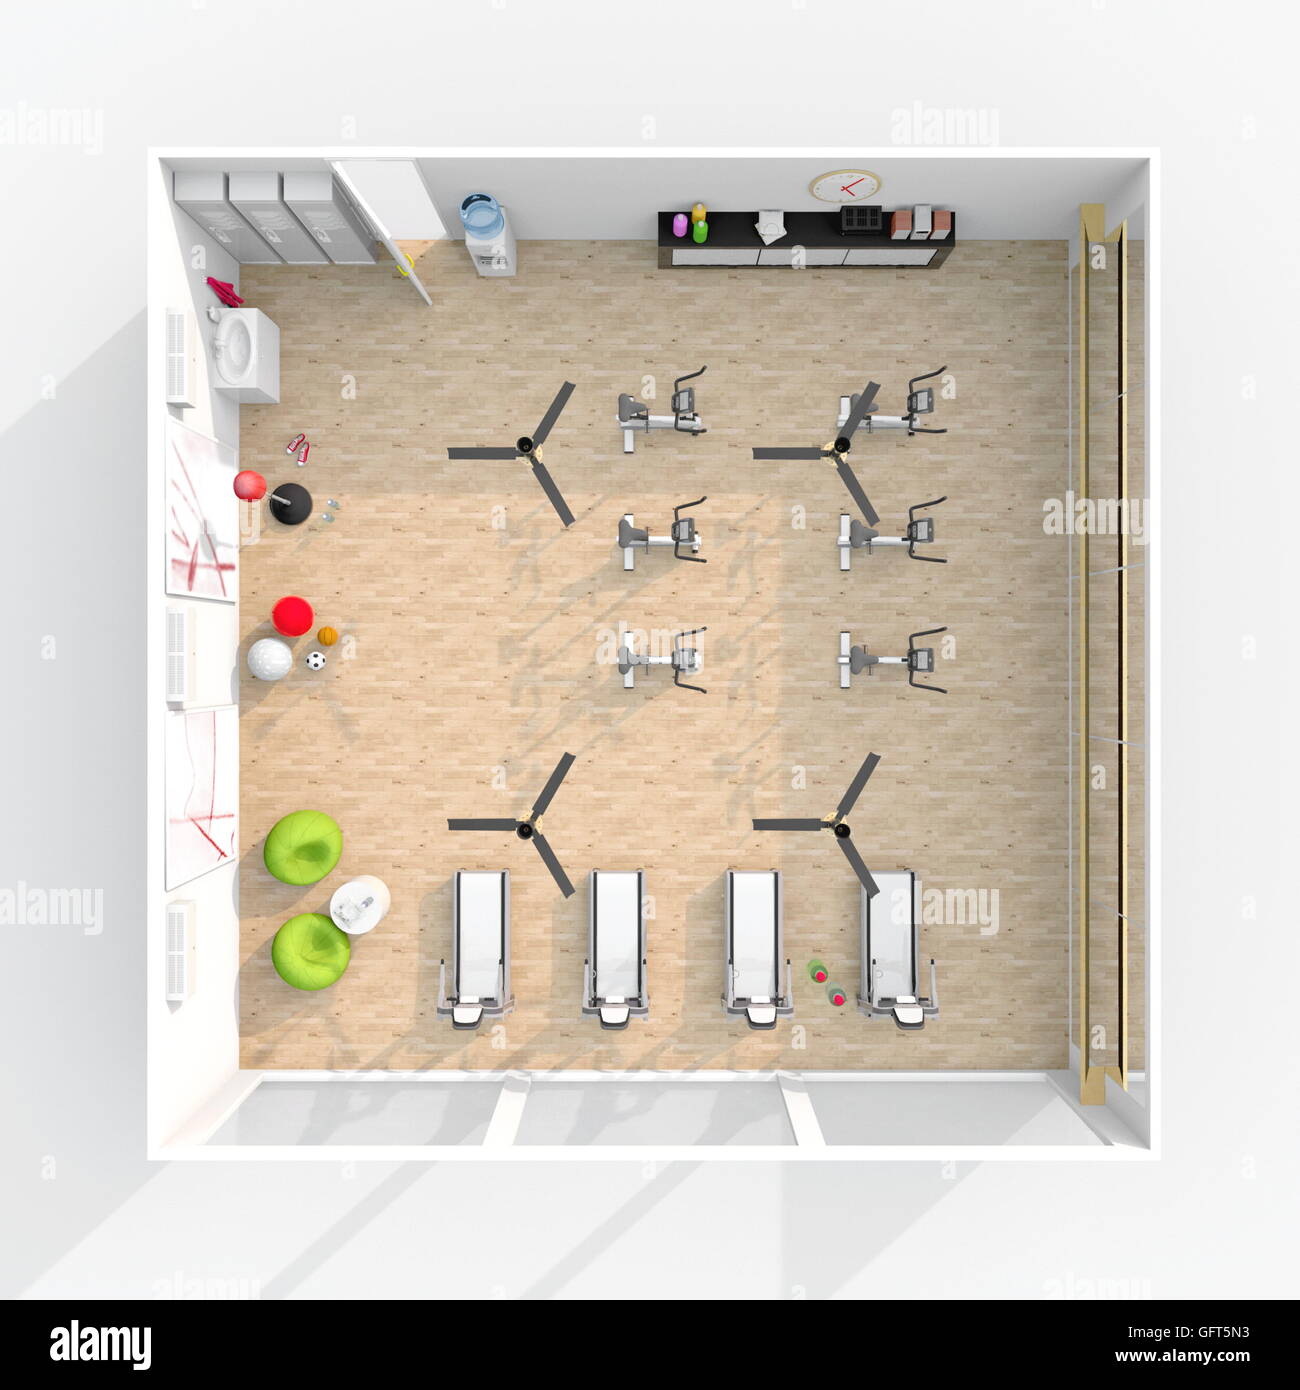 Le rendu 3D Intérieur vue en plan du sport meublé Banque D'Images